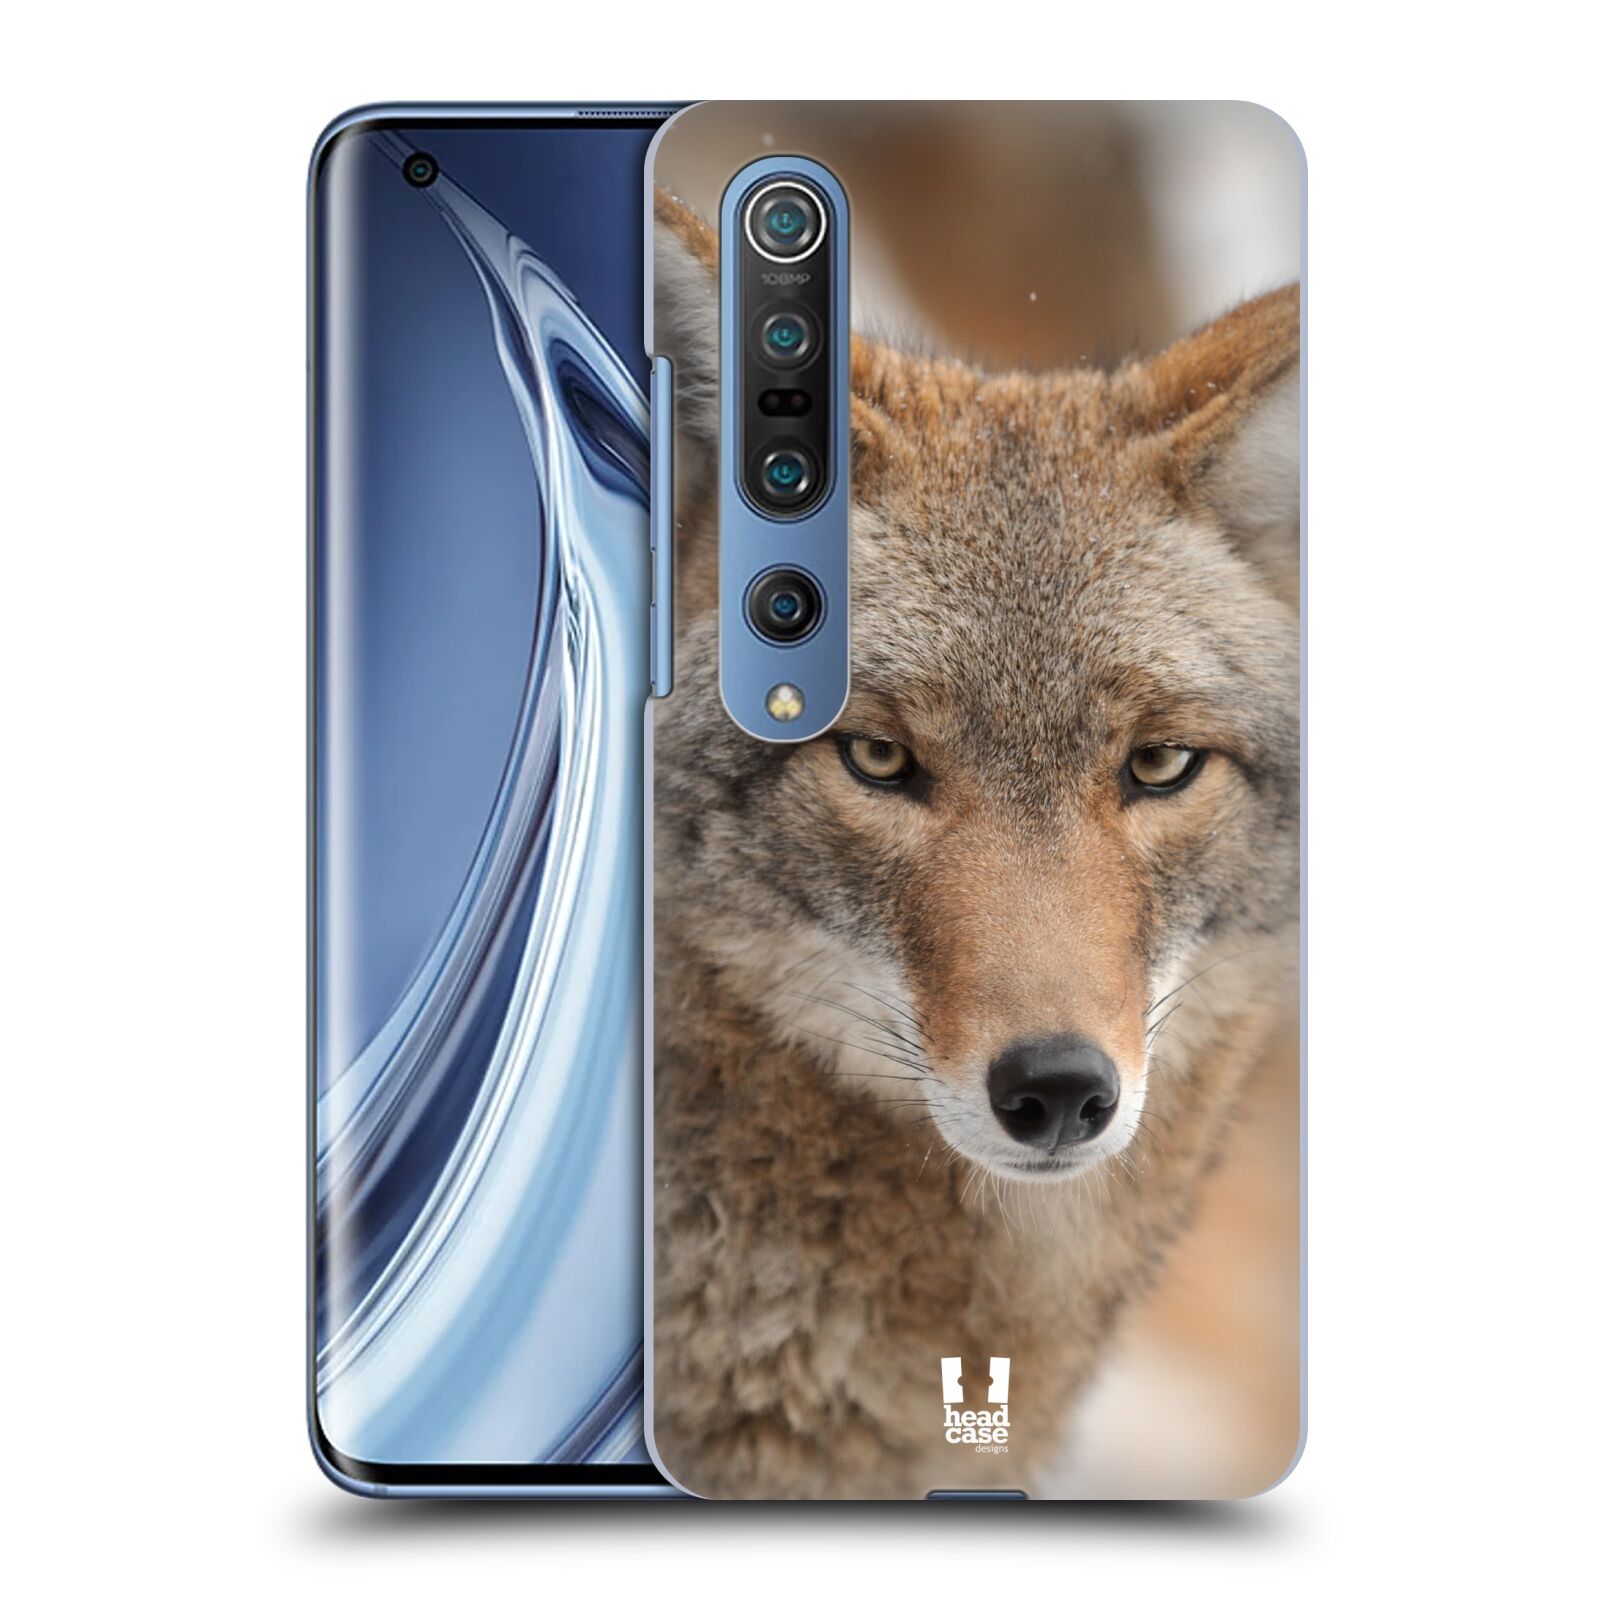 HEAD CASE plastový obal na mobil Xiaomi Mi 10 vzor slavná zvířata foto kojot